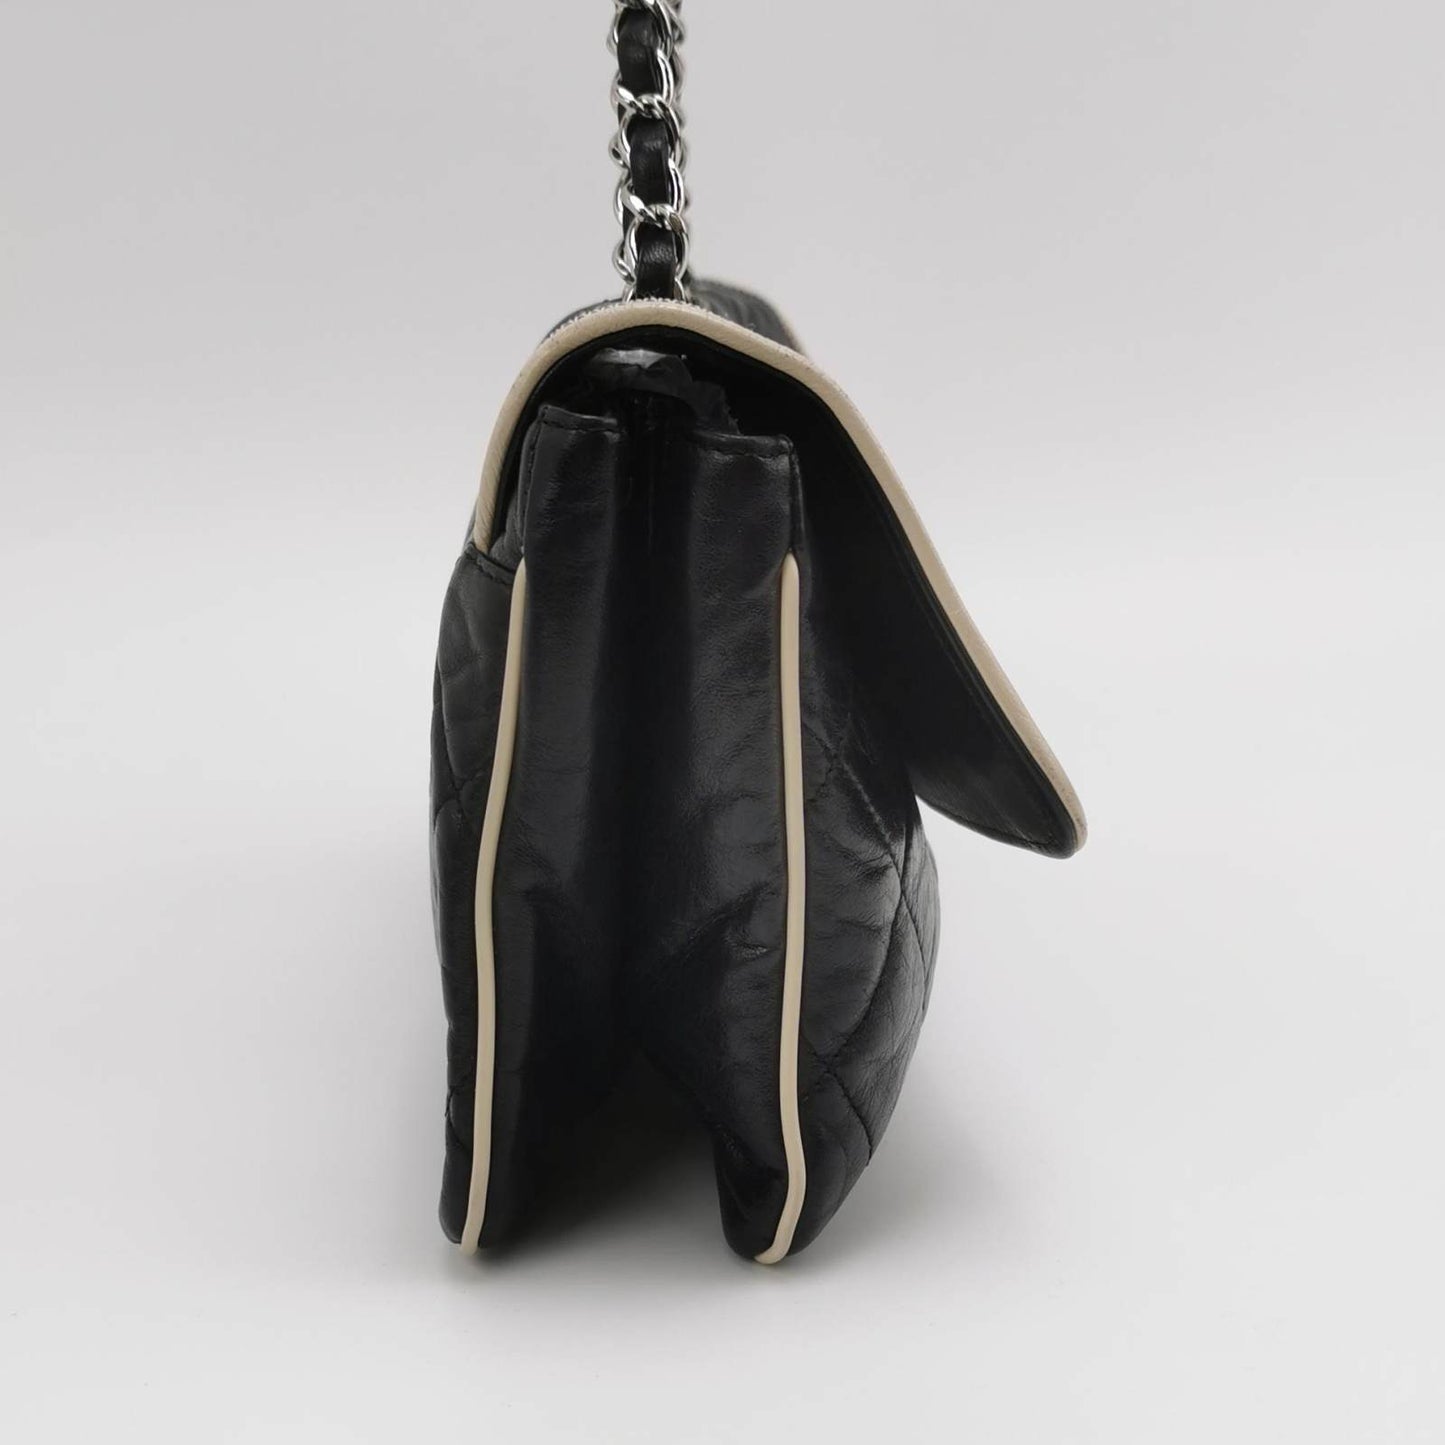 Chanel East West Mademoiselle Flap Bag 2008 Medium Black Leather Shoulder Bag